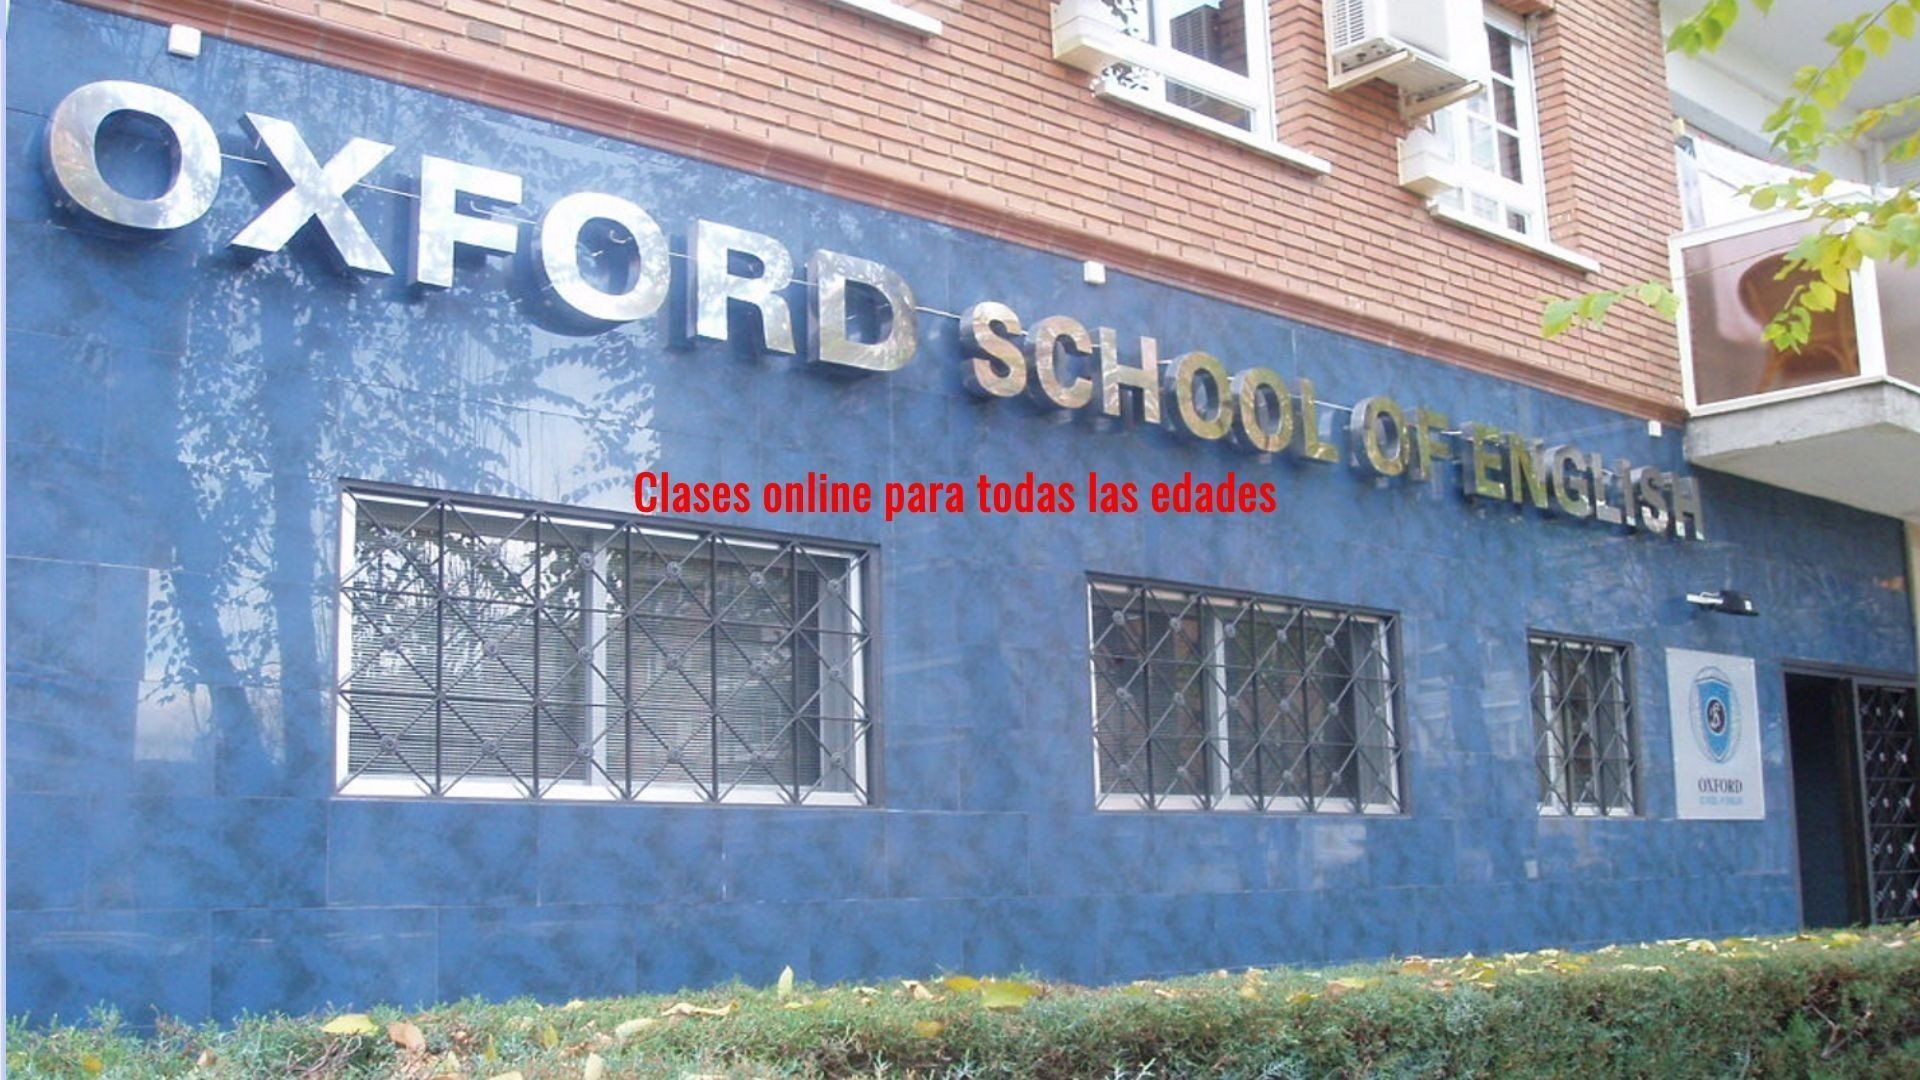 (c) Oxfordschoolofenglish.es